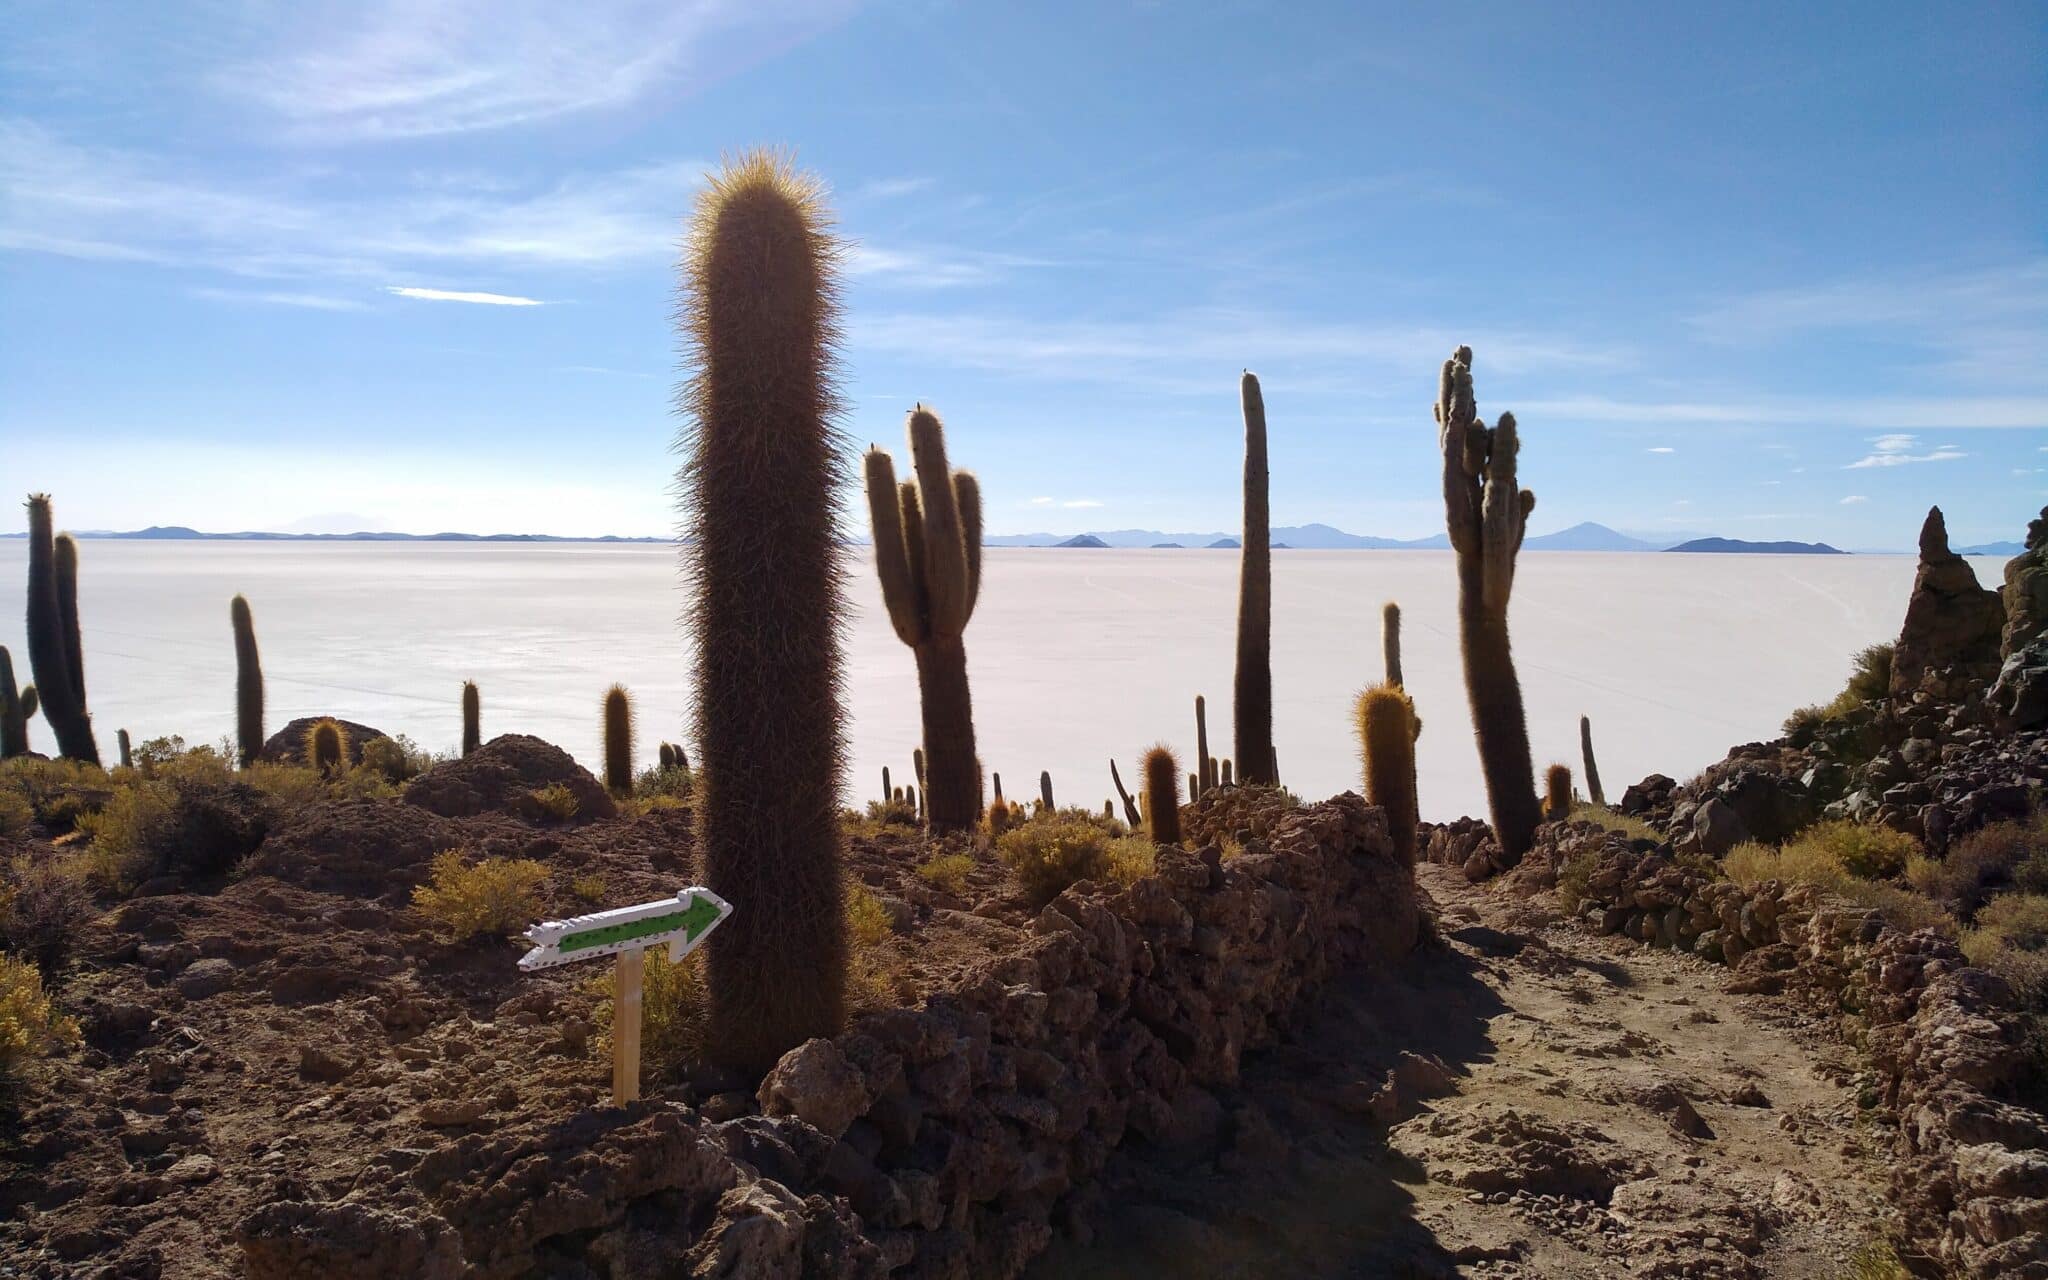 Cactus, attraverso i quali si snoda un sentiero, sullo sfondo la distesa del deserto salato e le montagne all'orizzonte.